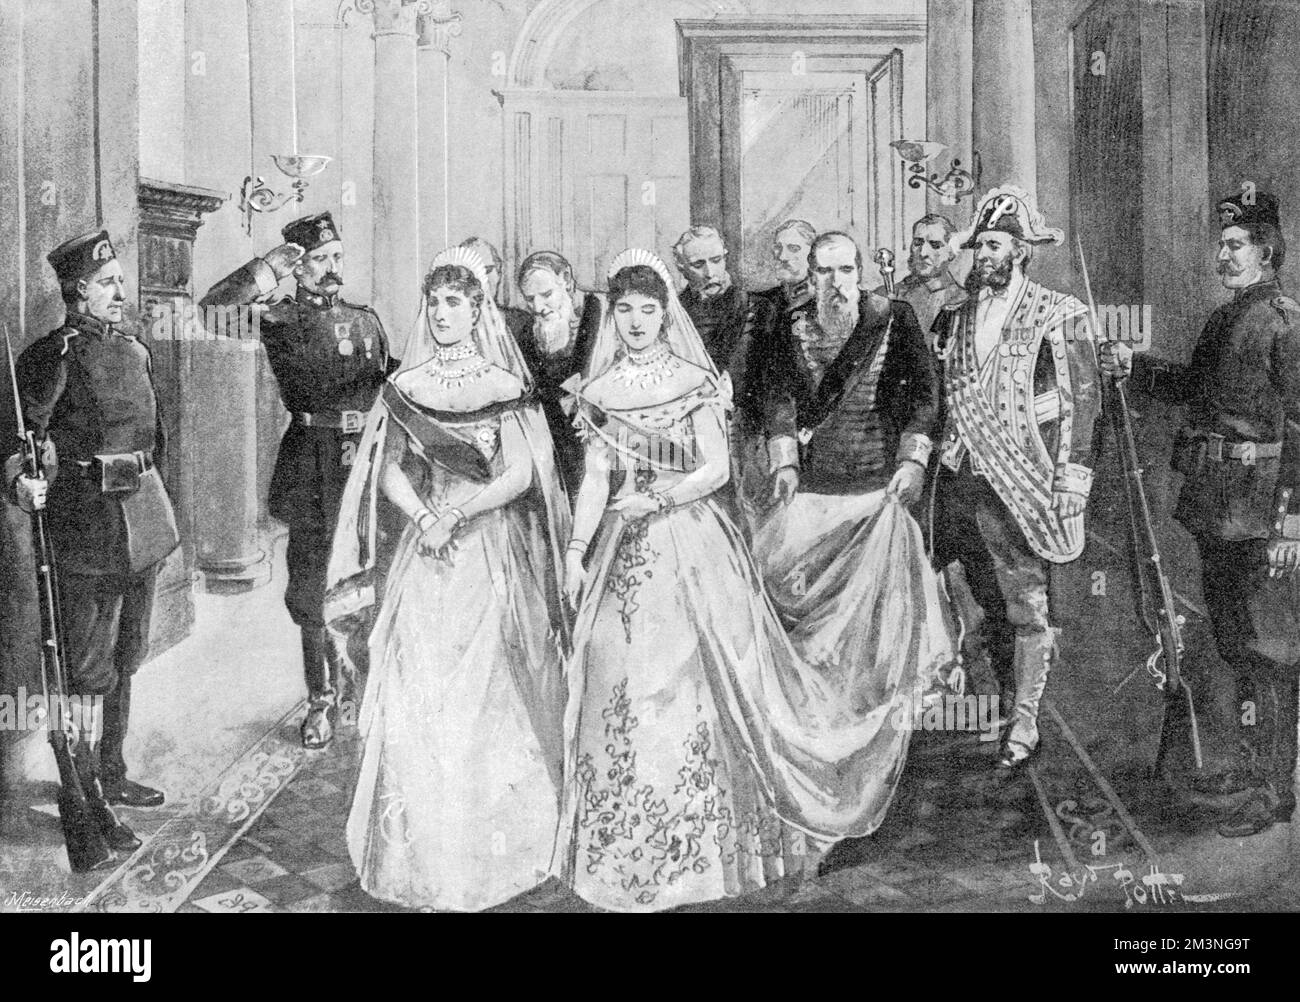 La Grande duchesse Alexandra Feodorovna, princesse Alix de Hesse, la mariée impériale, arrive au Palais d'hiver pour épouser l'empereur Nicolas II Elle est accompagnée de l'impératrice veuve, consort de l'empereur Alexandre III Date : 26th novembre 1894 Banque D'Images